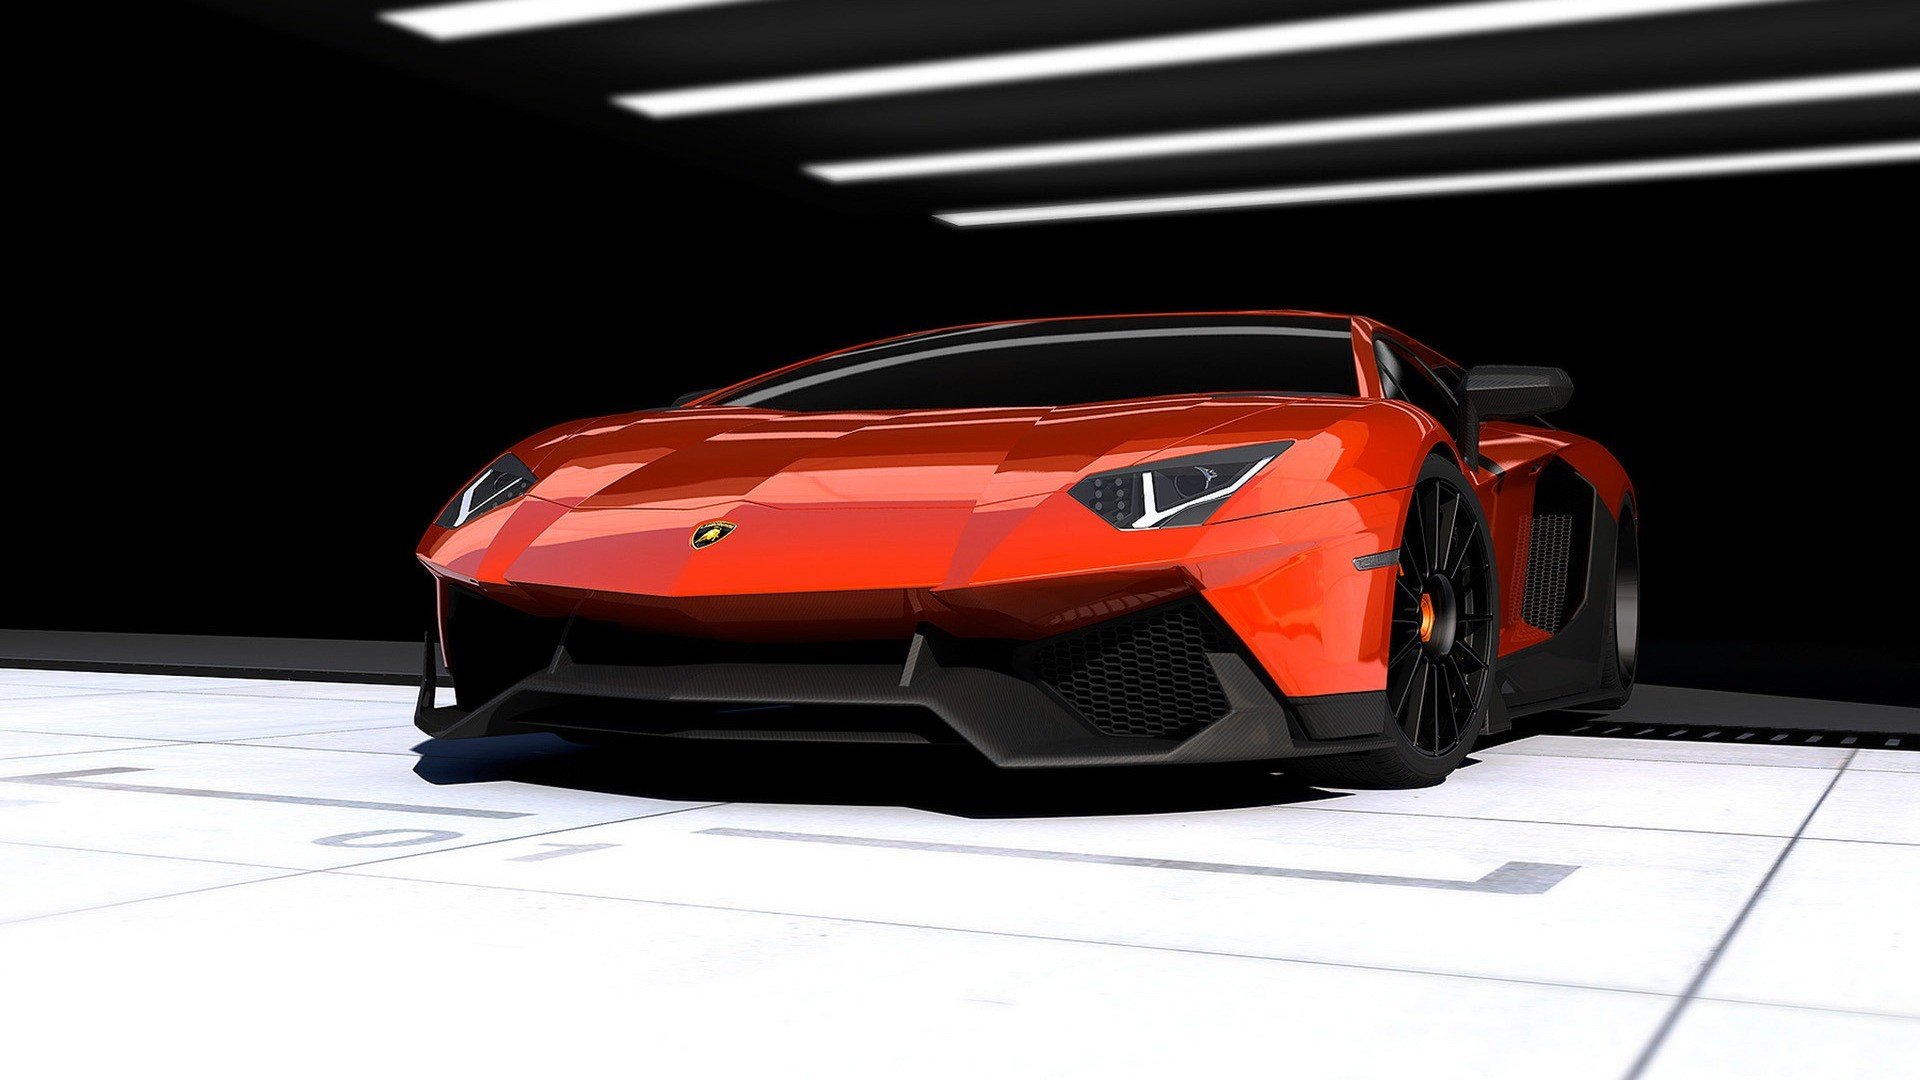 Download hd 1920x1080 Lamborghini Aventador PC background ID:324111 for free